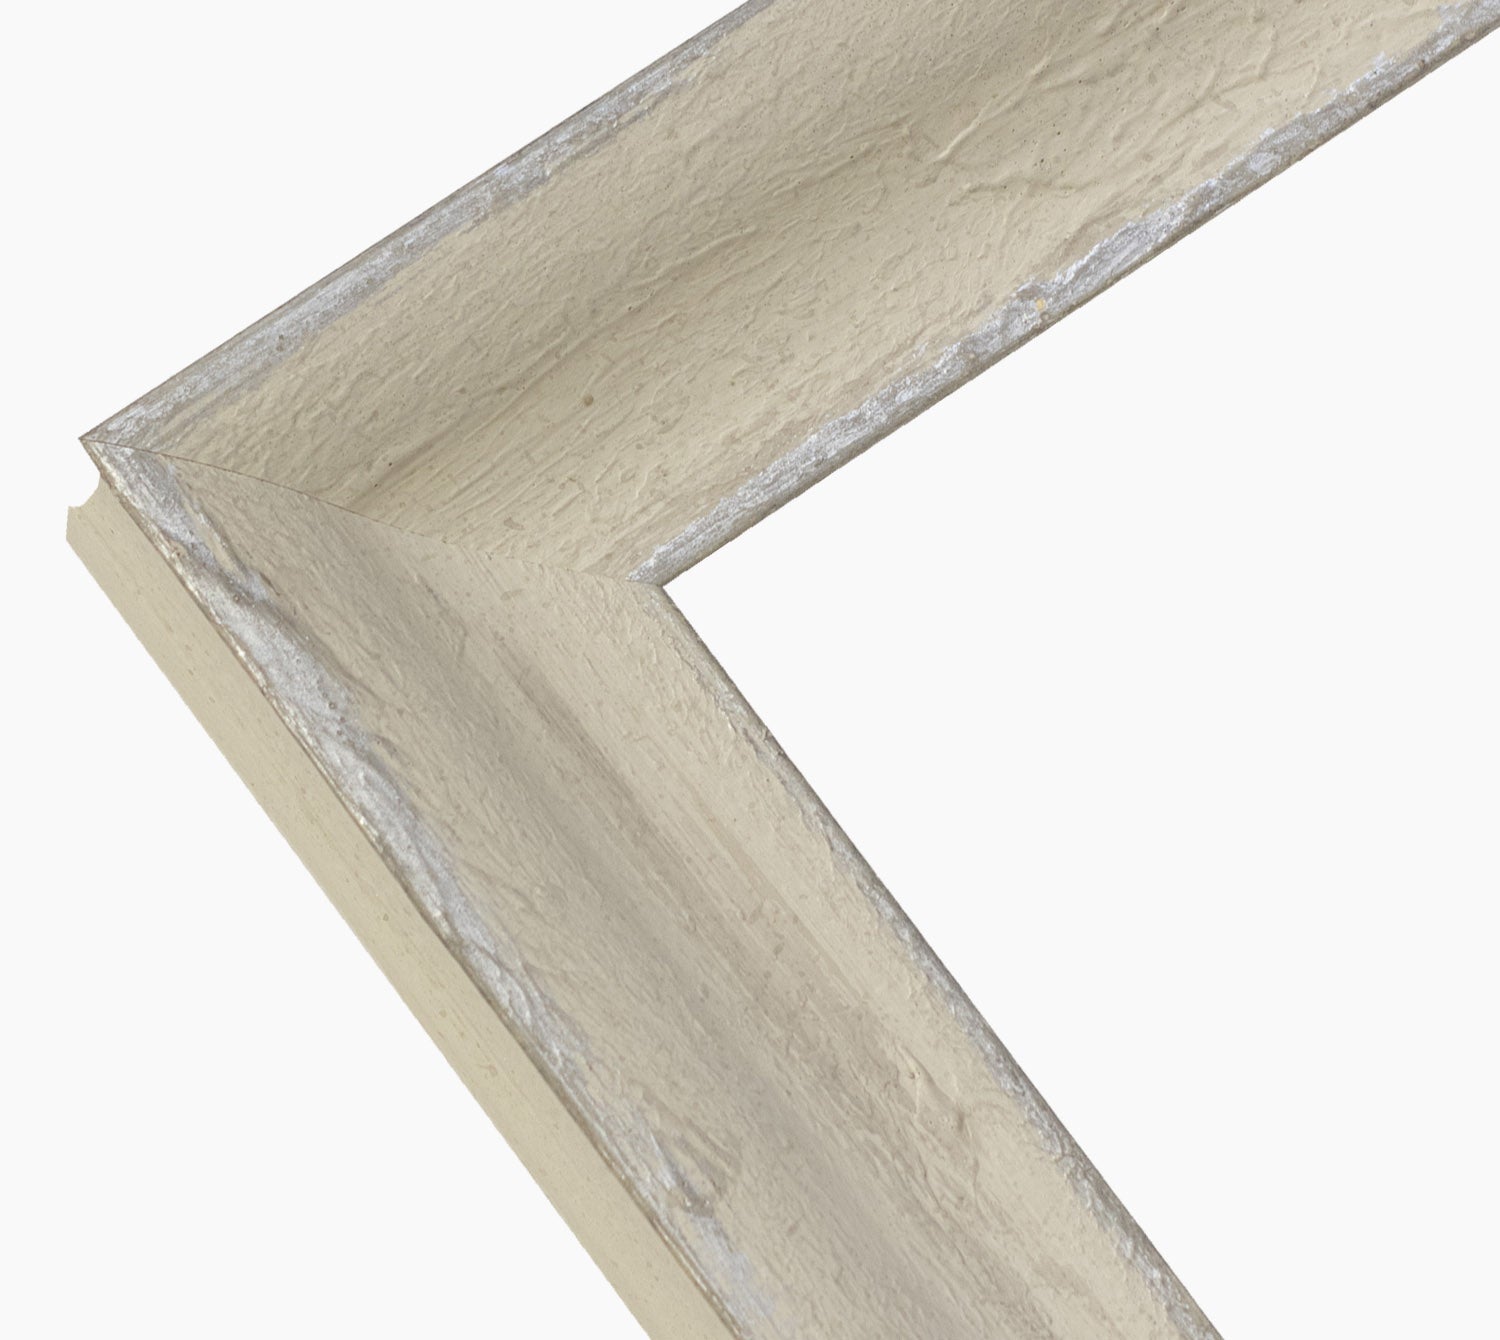 345.450 cadre en bois blanc crème avec argent mesure de profil 60x45 mm Lombarda cornici S.n.c.